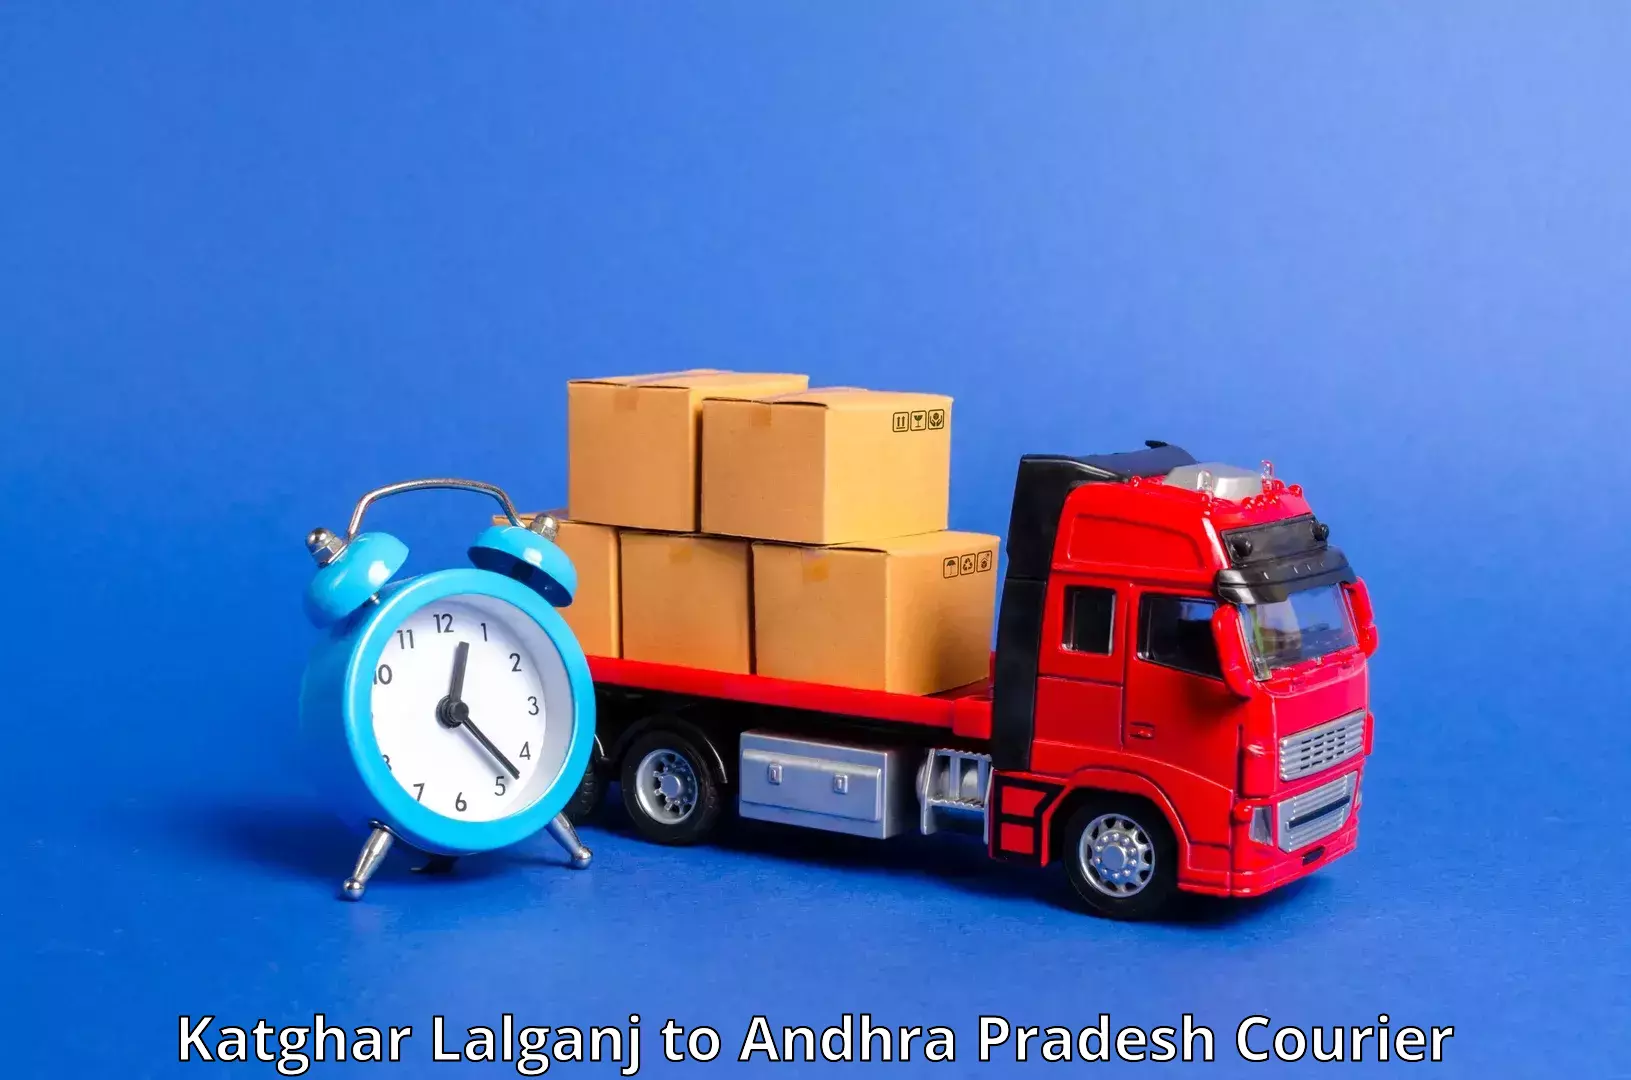 Corporate courier solutions Katghar Lalganj to Vijayawada